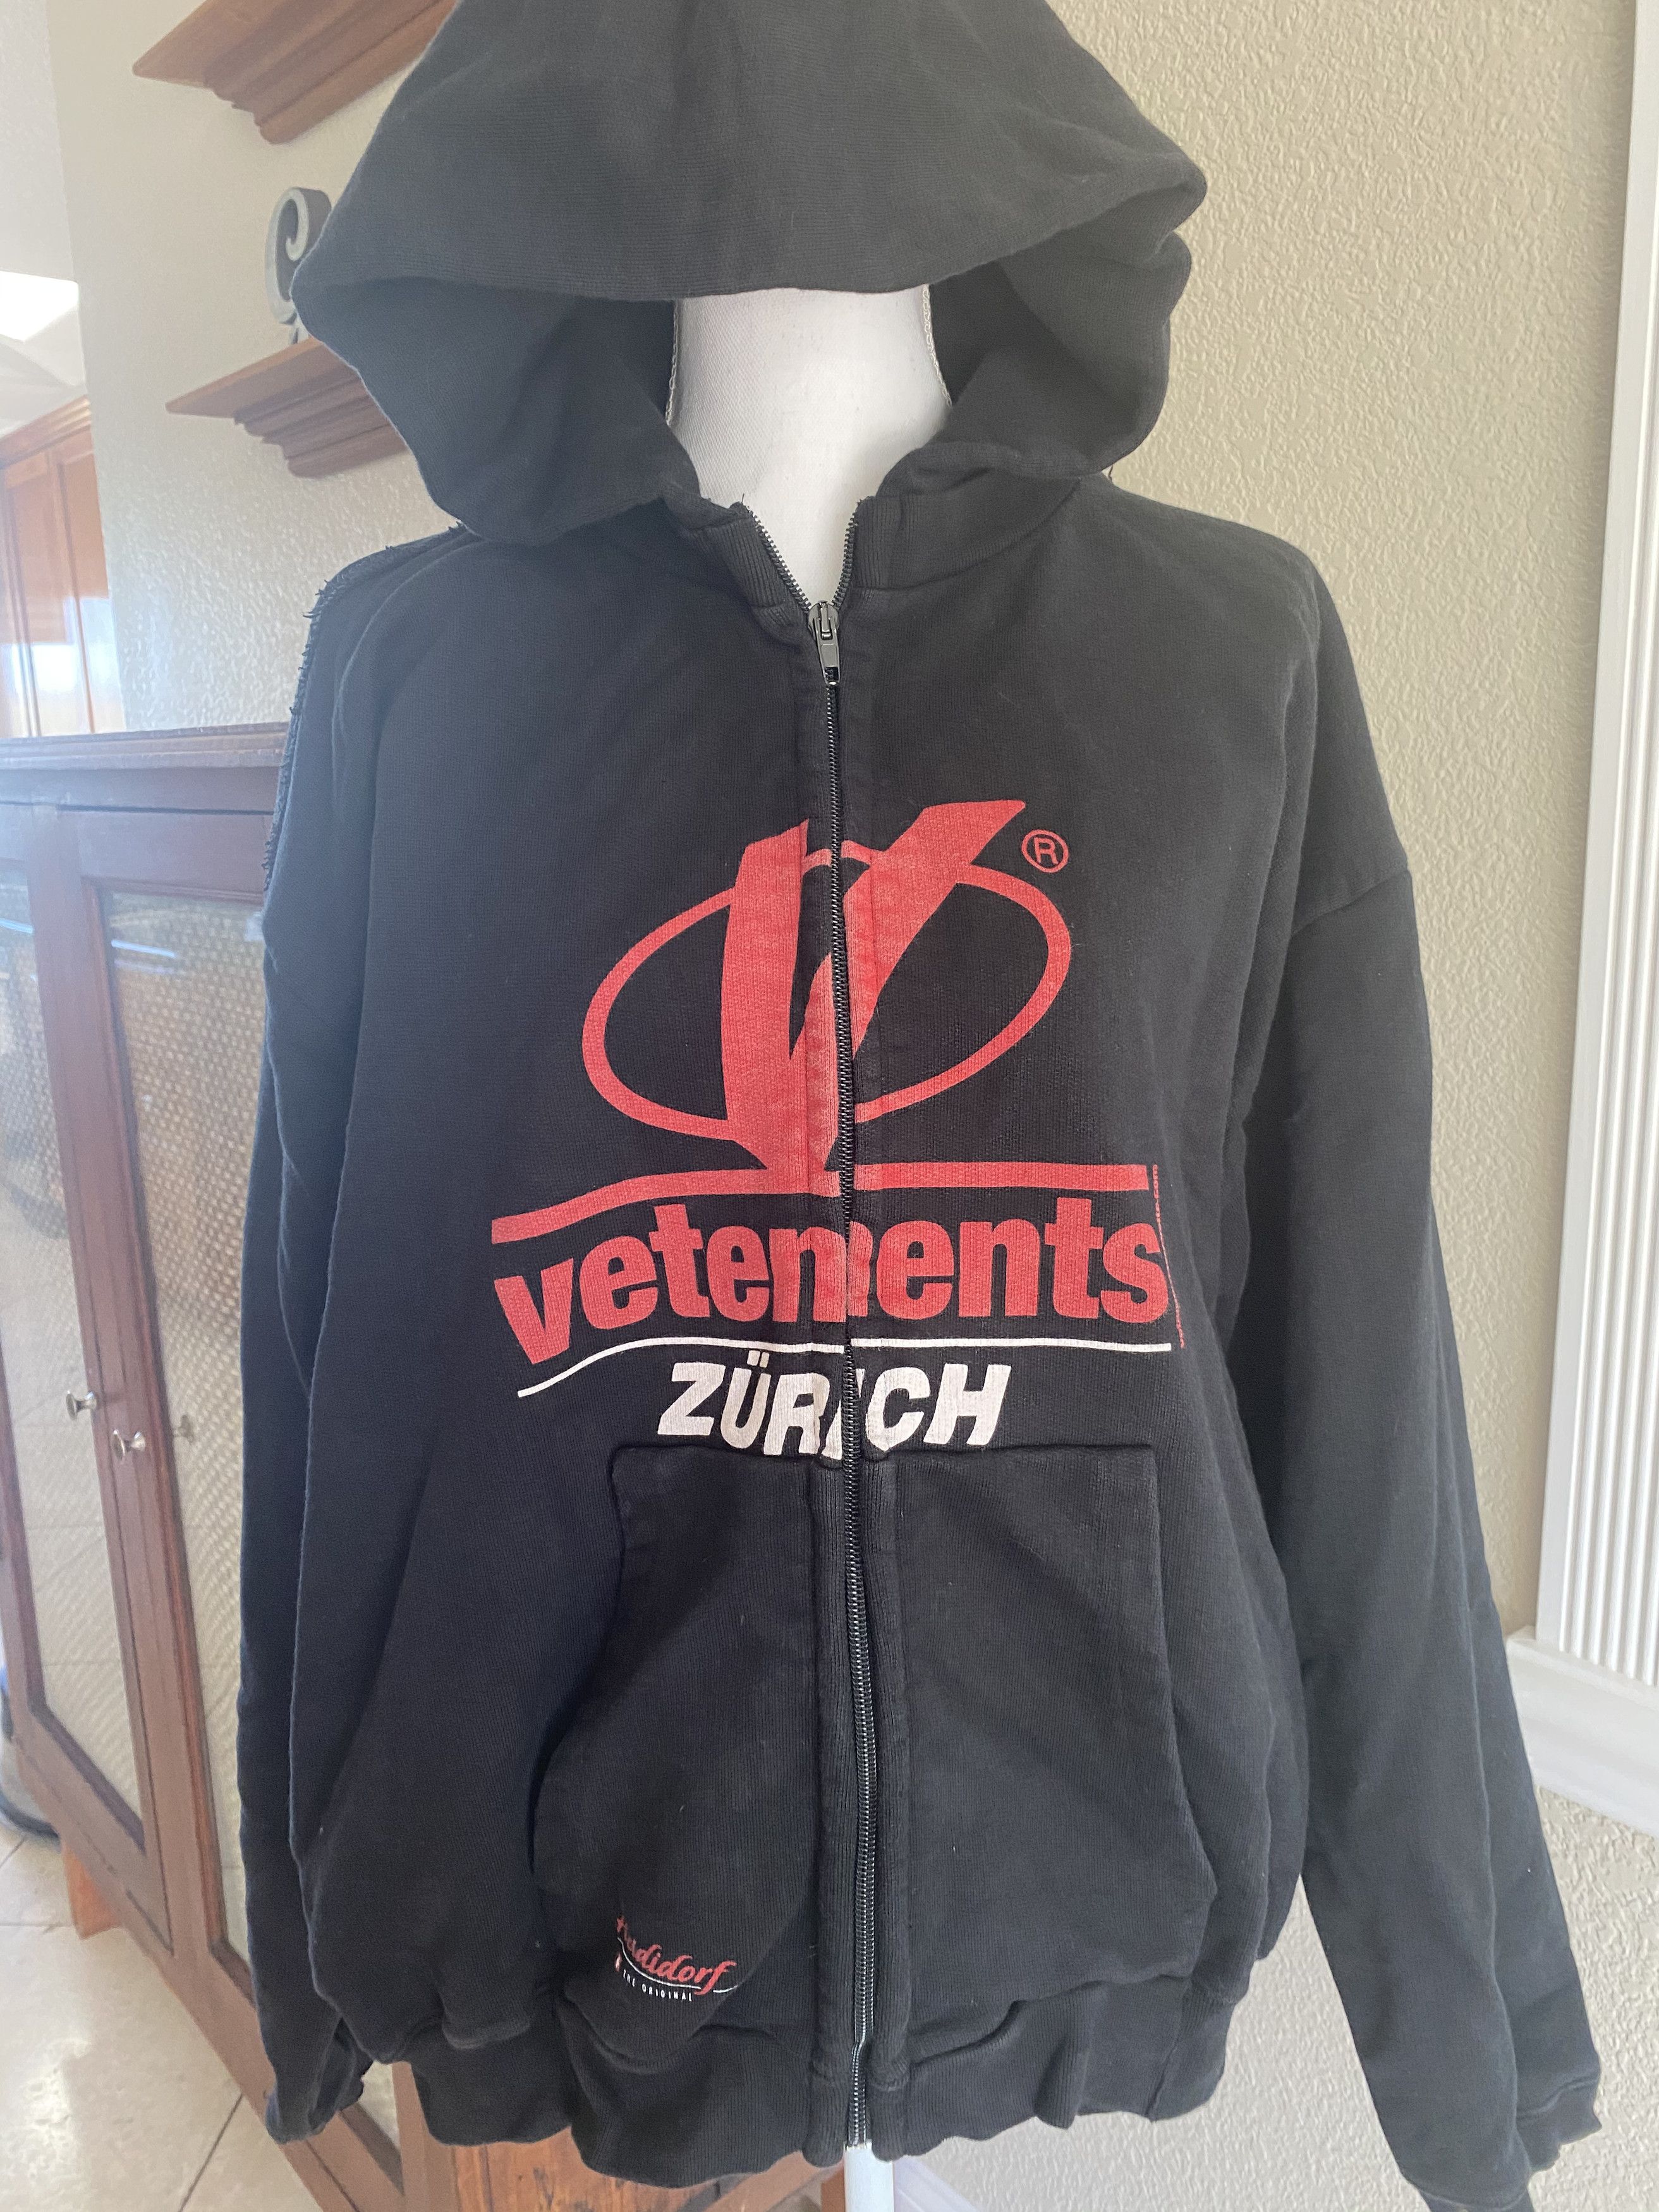 Vetements 2018 graphic zurich hoodie Size US M / EU 48-50 / 2 - 5 Thumbnail